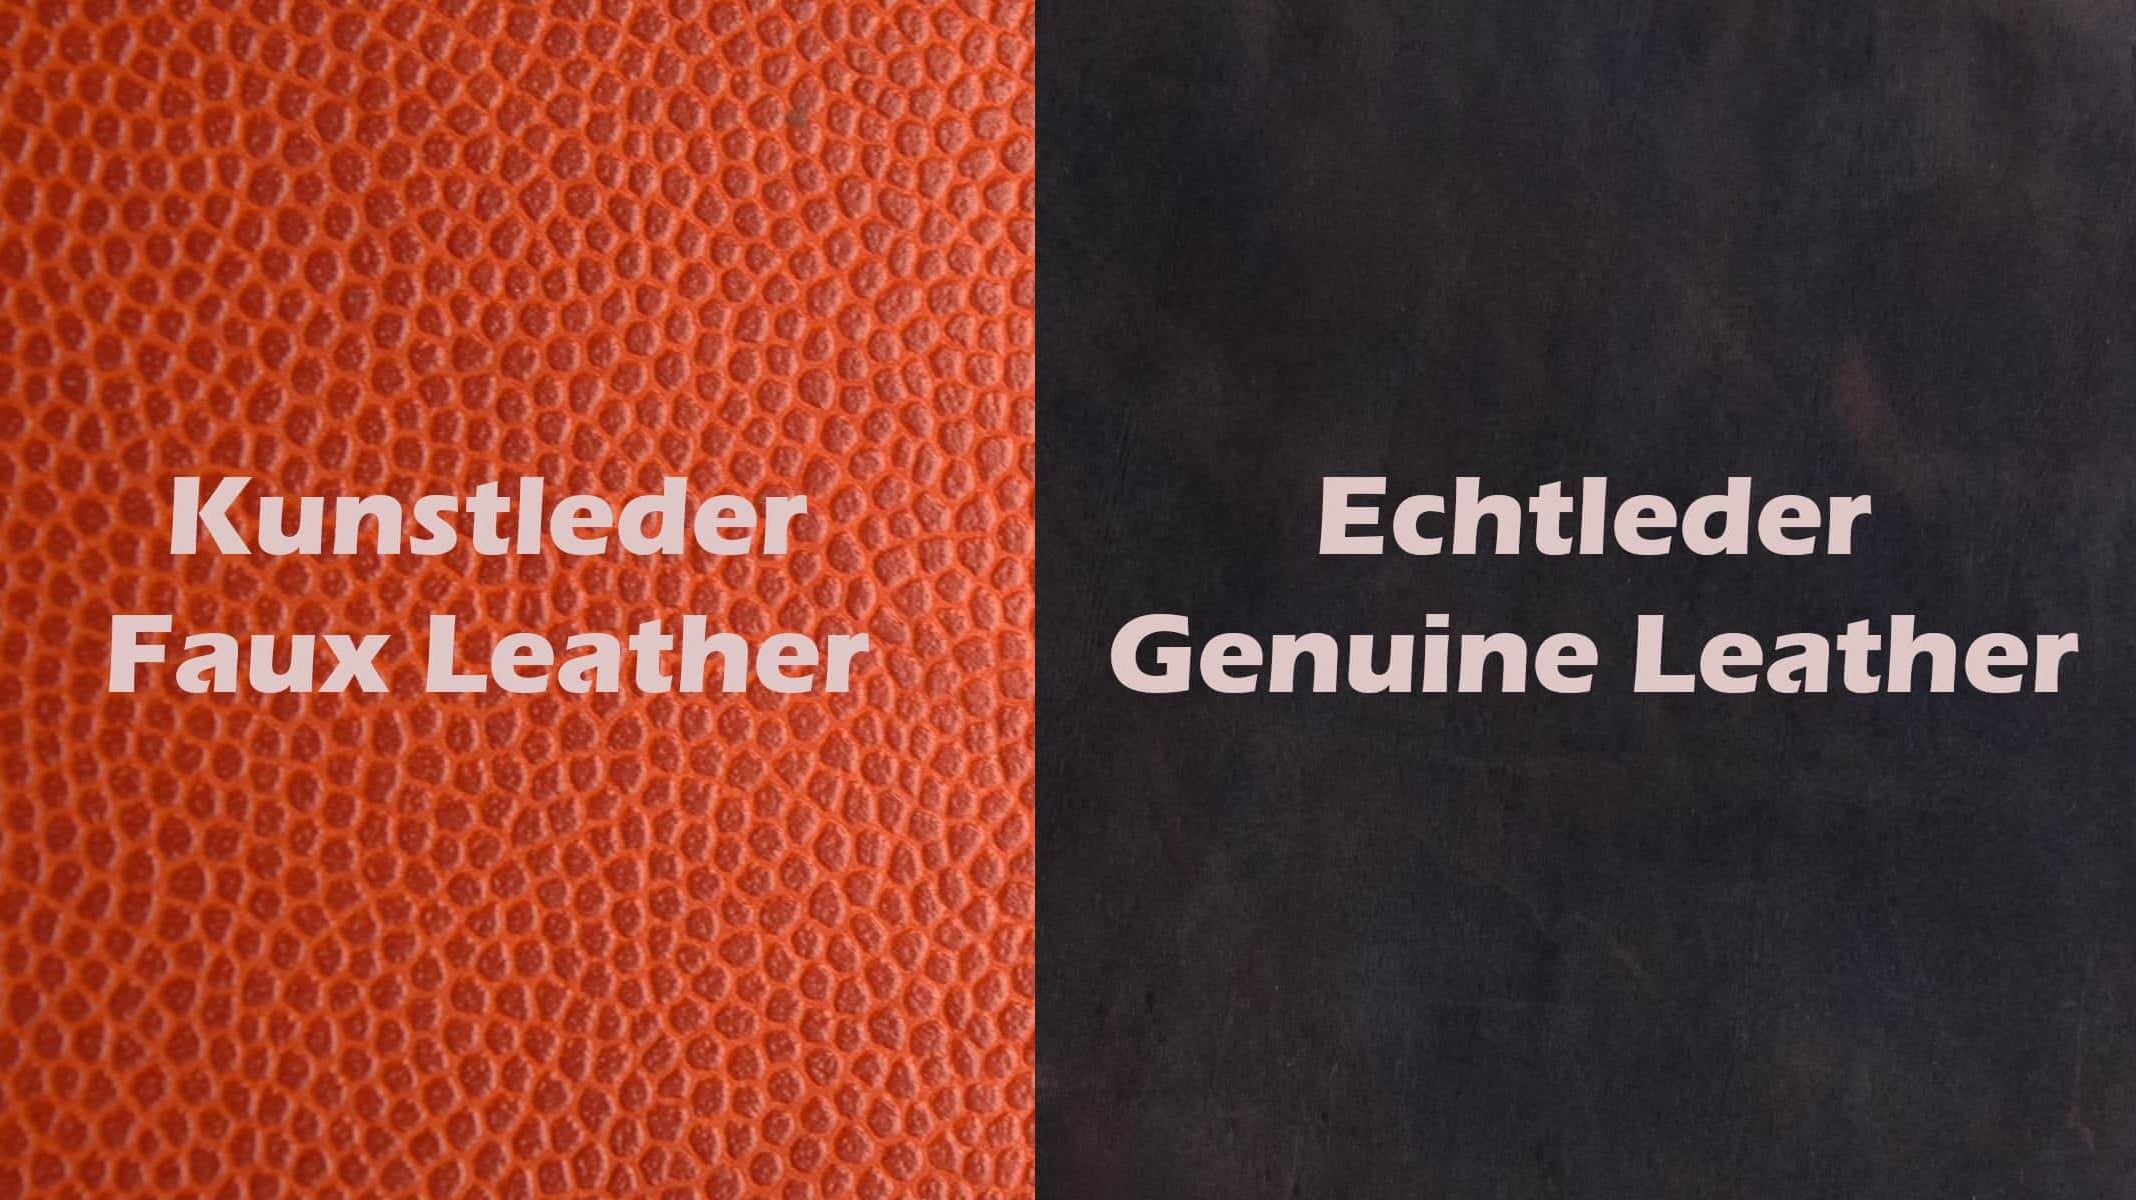 echtleder vs kunstleder - real leather vs faux leather